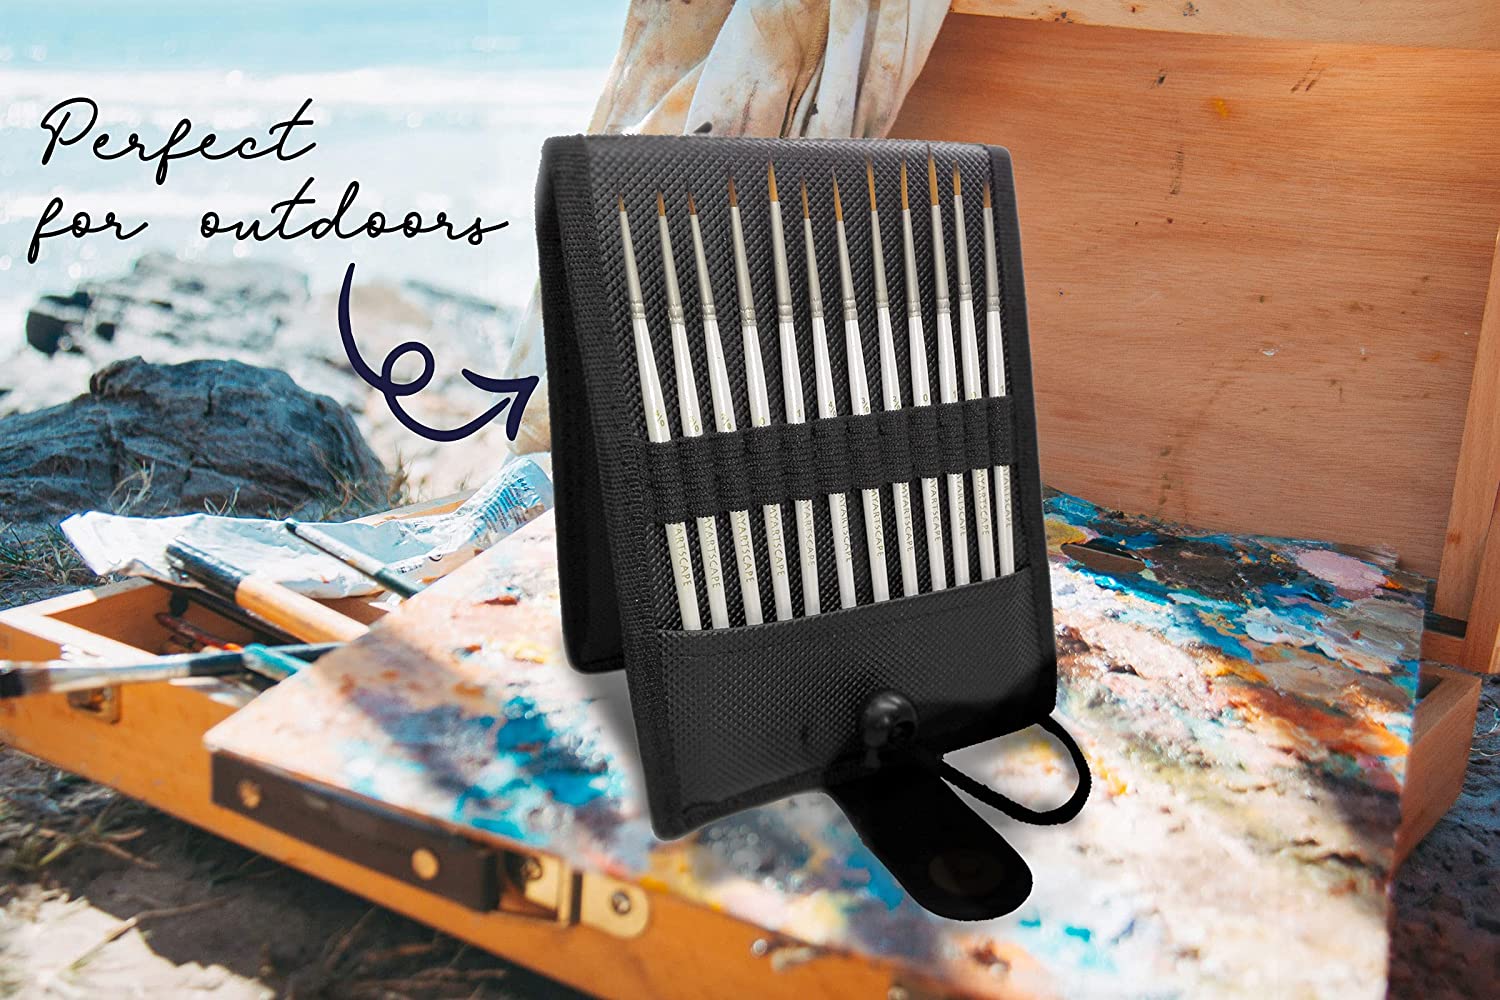 Short Handle Paint Brush - Set of 15 Art Brushes – MyArtscape